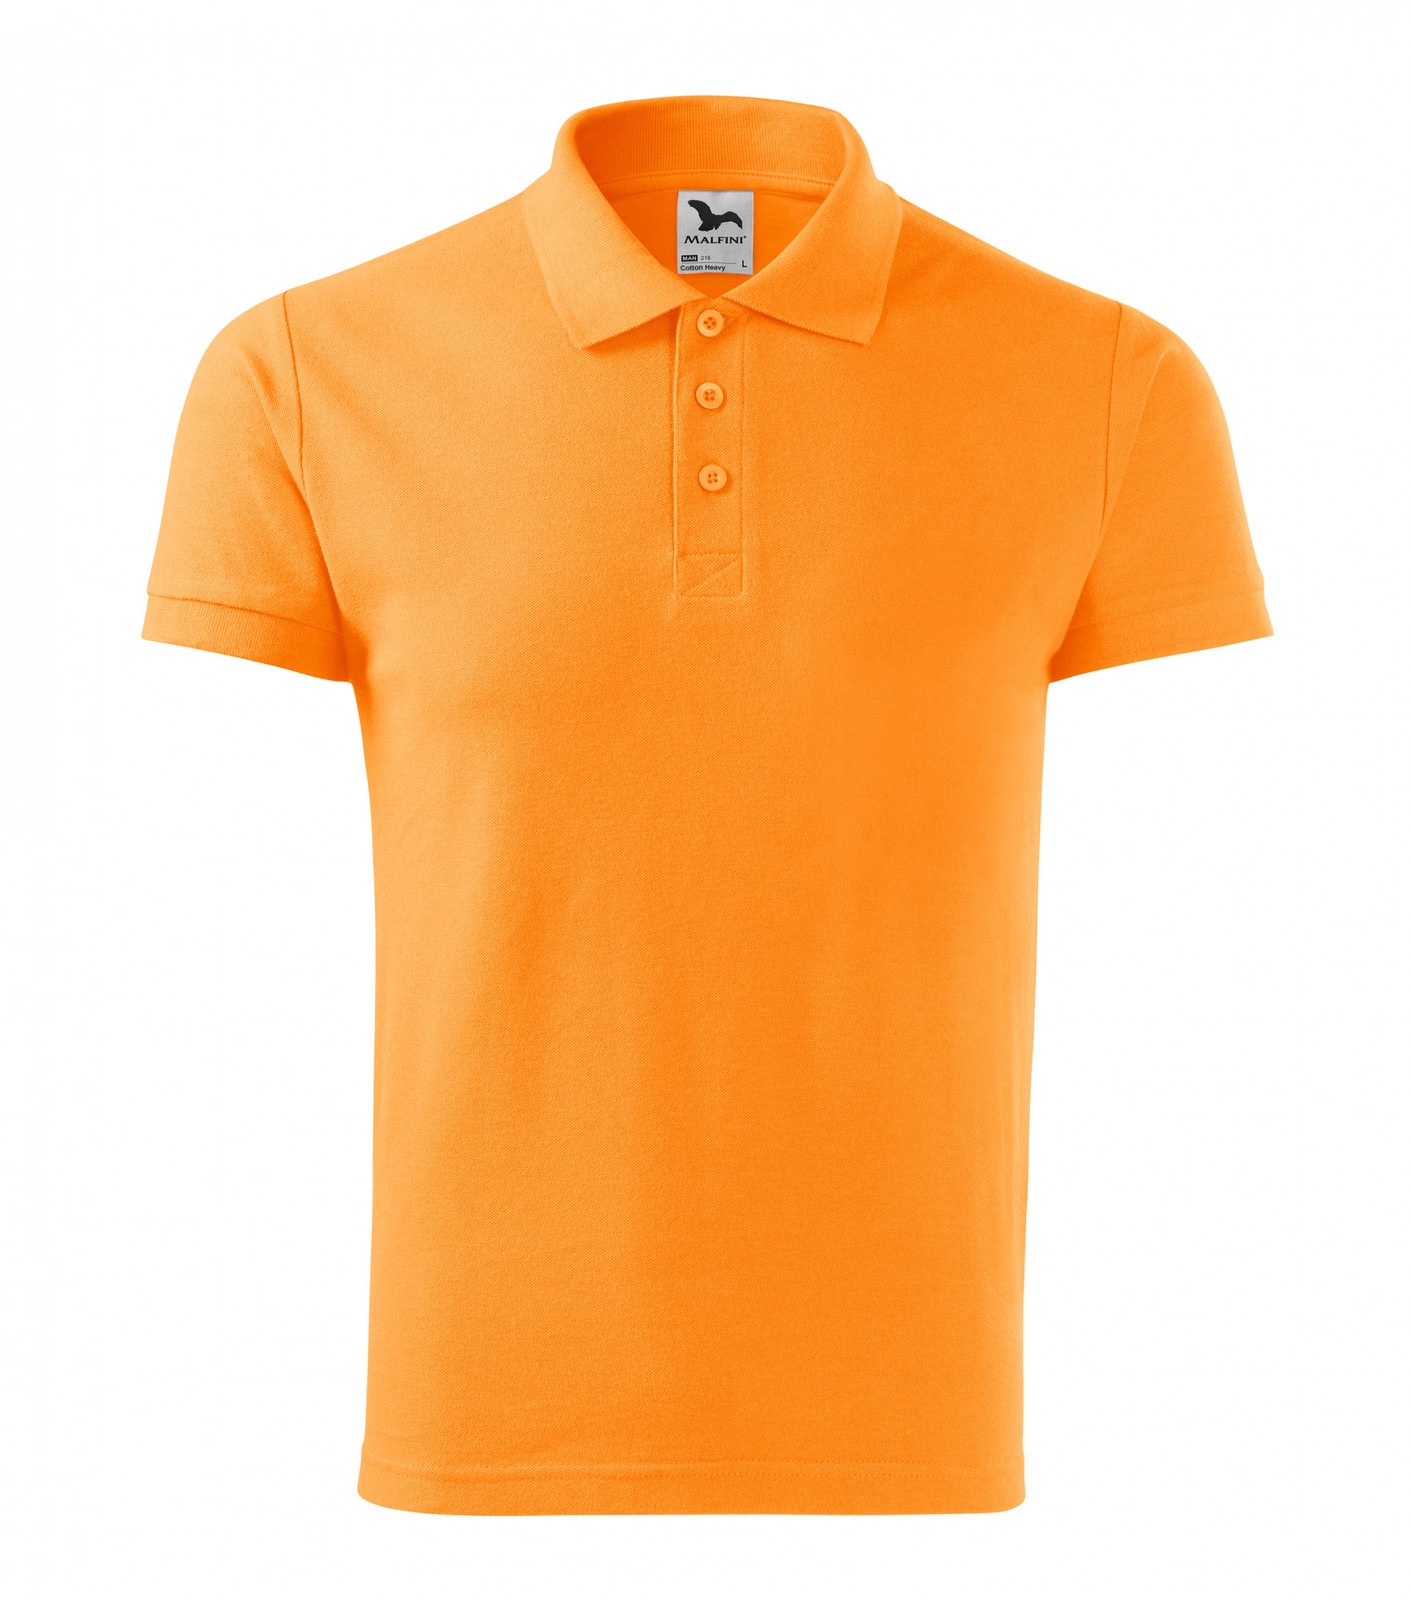 Pánska bavlnená polokošeľa Adler Cotton Heavy 215 - veľkosť: L, farba: mandarínková oranžová